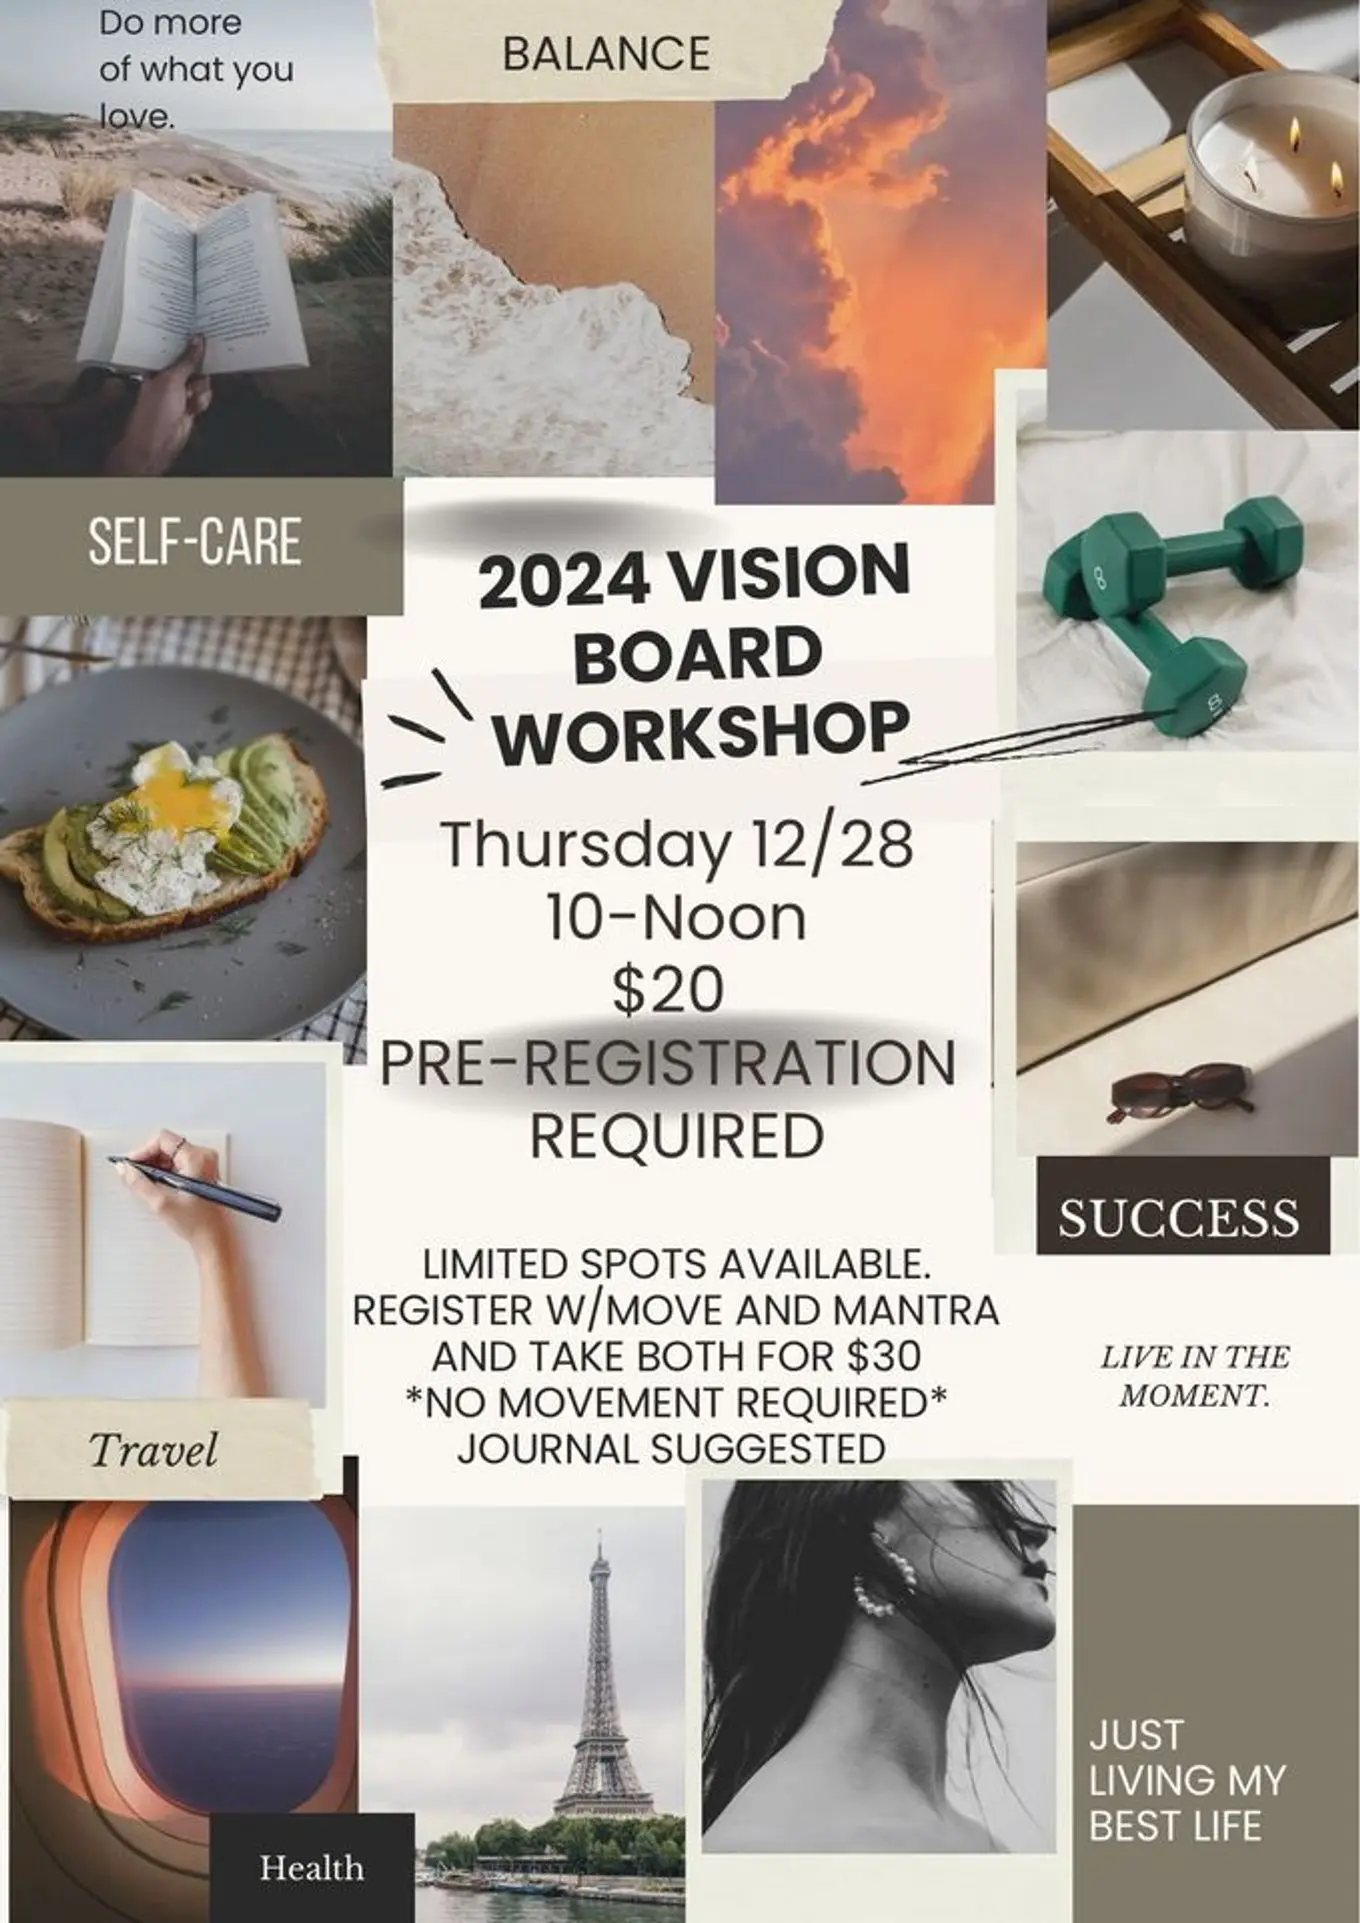 Nov 4, Vision Board Workshop & Lunch